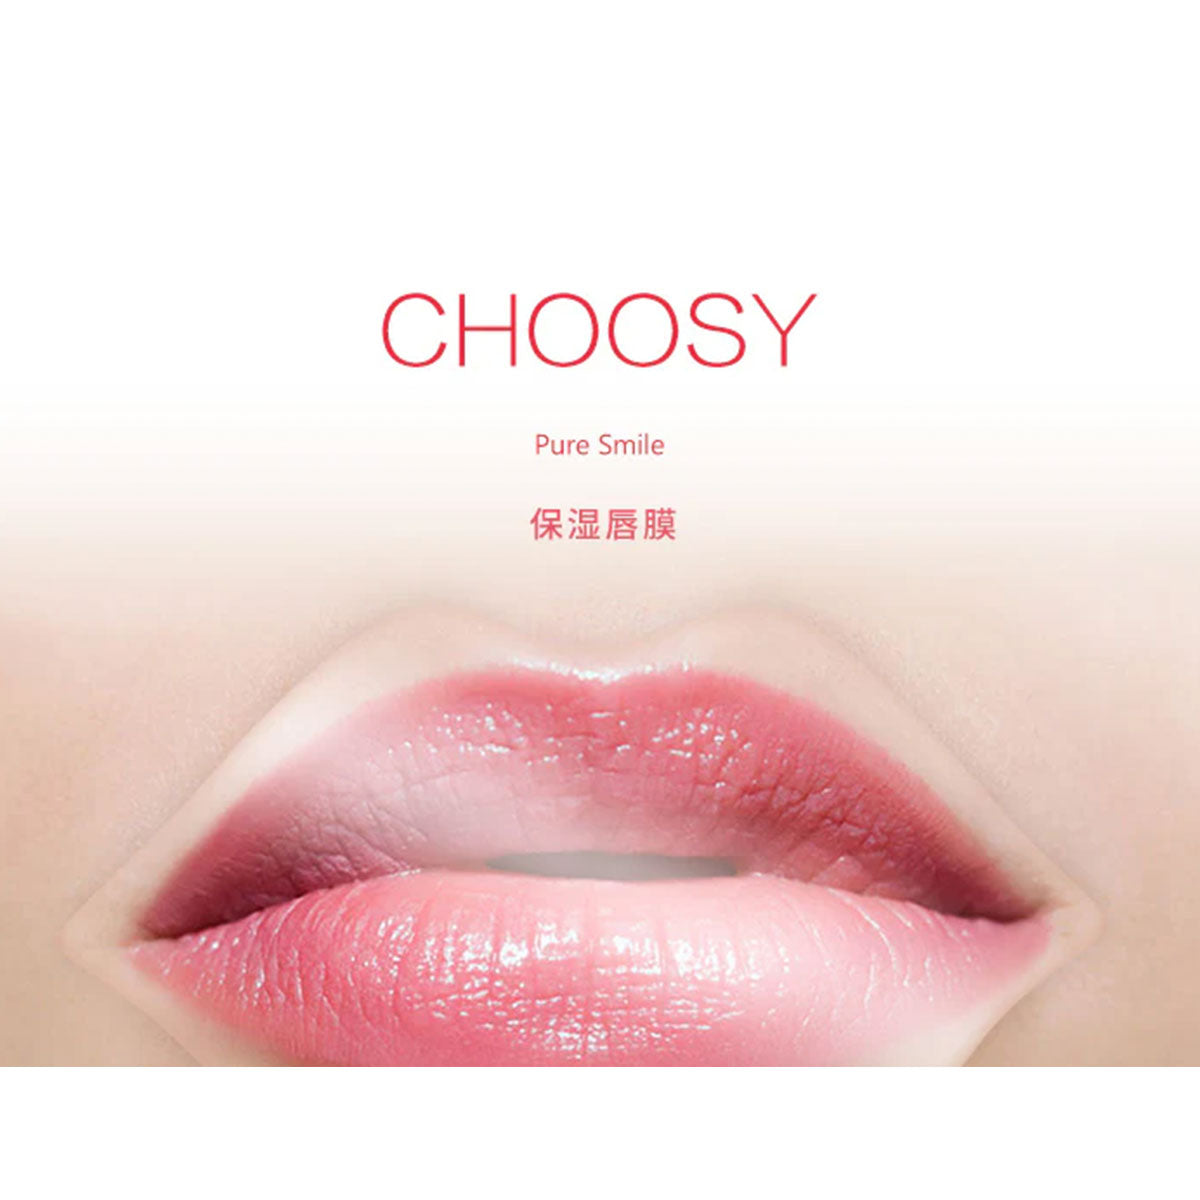 Pure Smile Choosy Lip Mask #Honey 1pcs